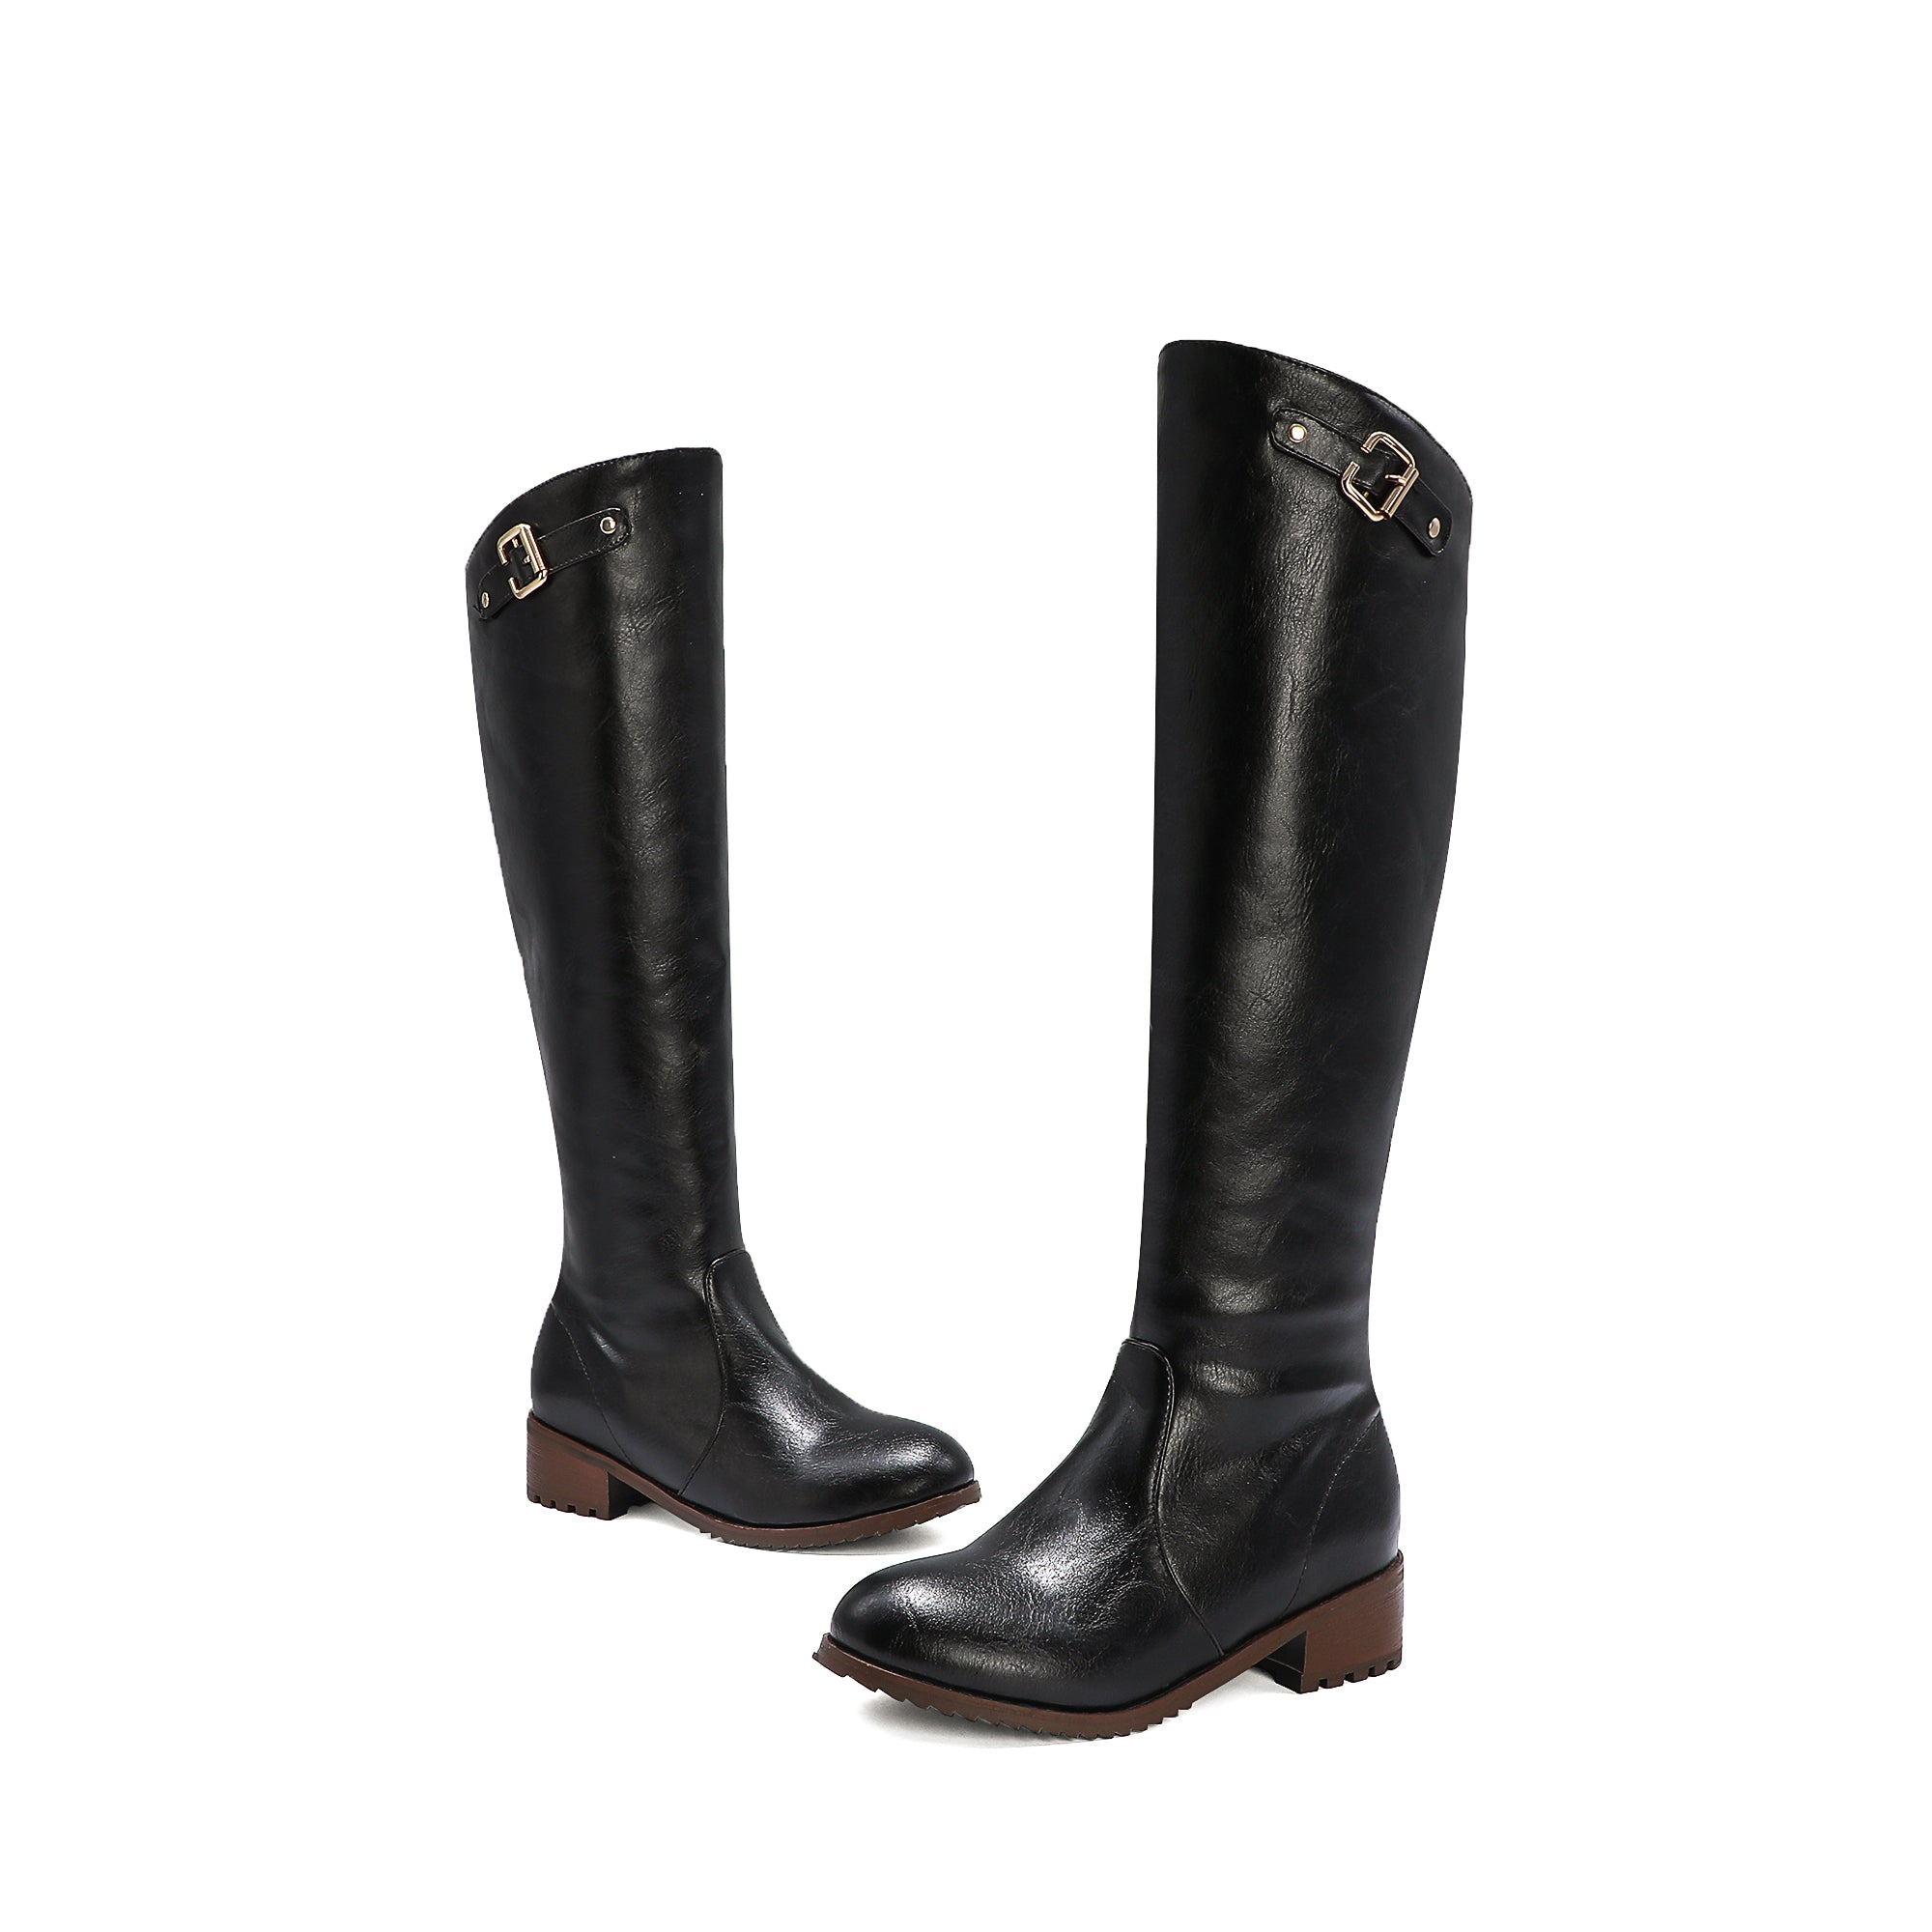 Bigsizeheels Black embellished retro round toe boots - Black freeshipping - bigsizeheel®-size5-size15 -All Plus Sizes Available!